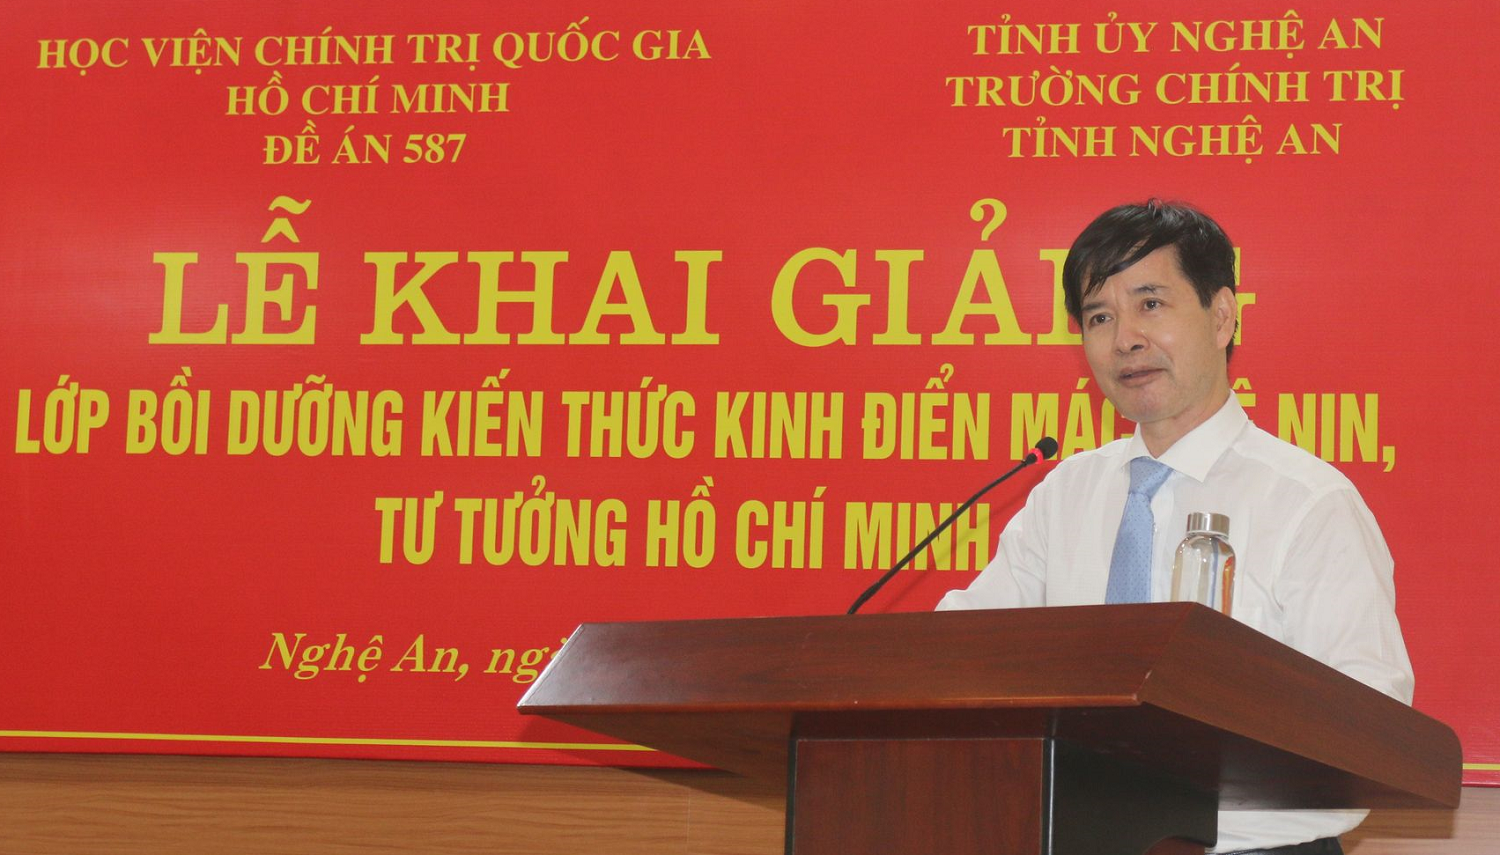 Khai giảng lớp Bồi dưỡng kiến thức Kinh điển Mác - Lênin, tư tưởng Hồ Chí Minh tại Nghệ An năm 2020